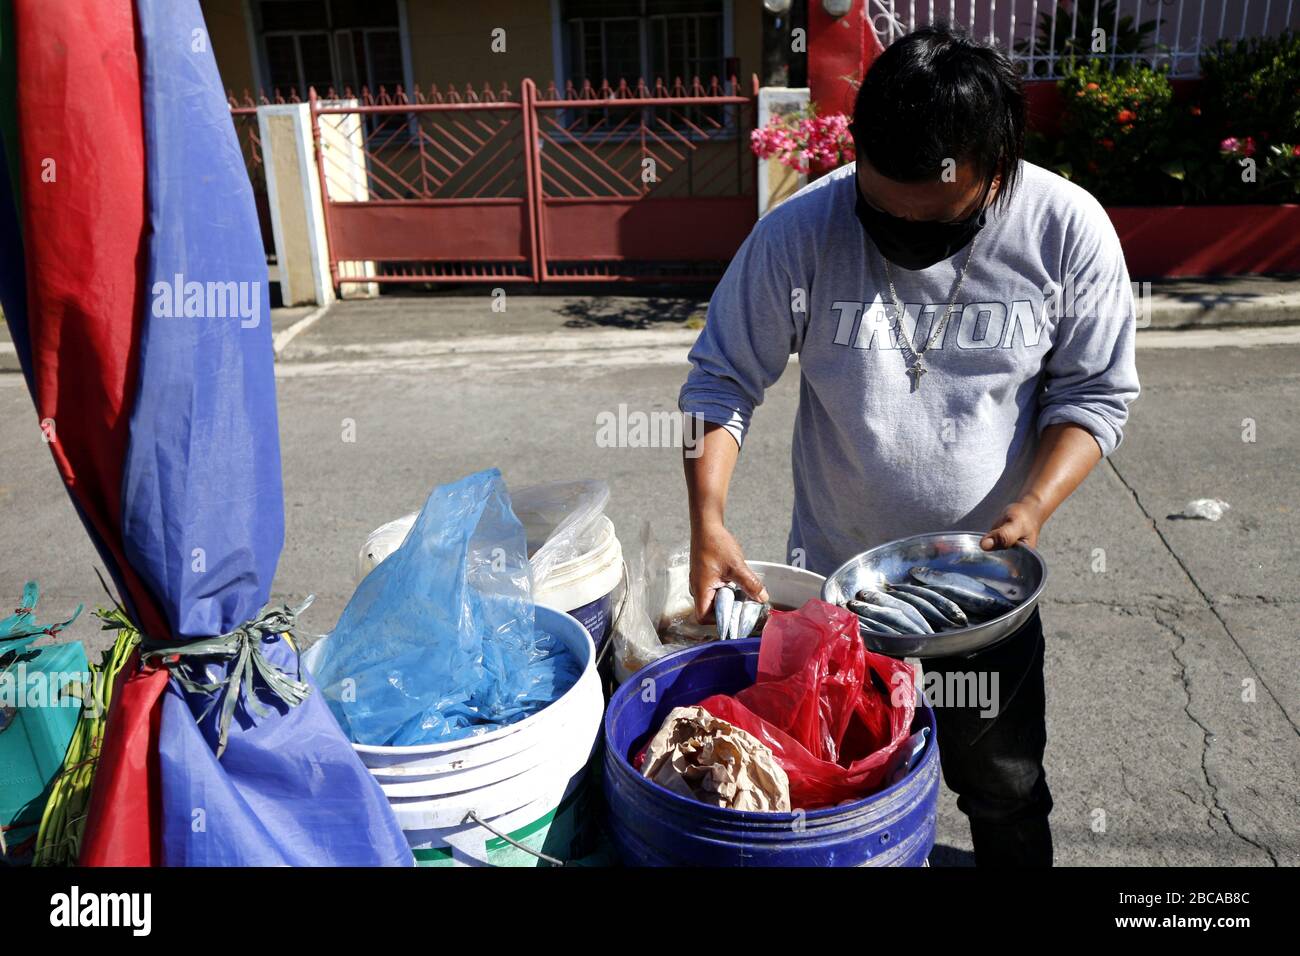 Antipolo City, Philippines - 3 avril 2020: Vendeur vendre du poisson aux communautés de sorte que les clients n'ont pas besoin de quitter leur maison pendant le verrouillage ou commun Banque D'Images